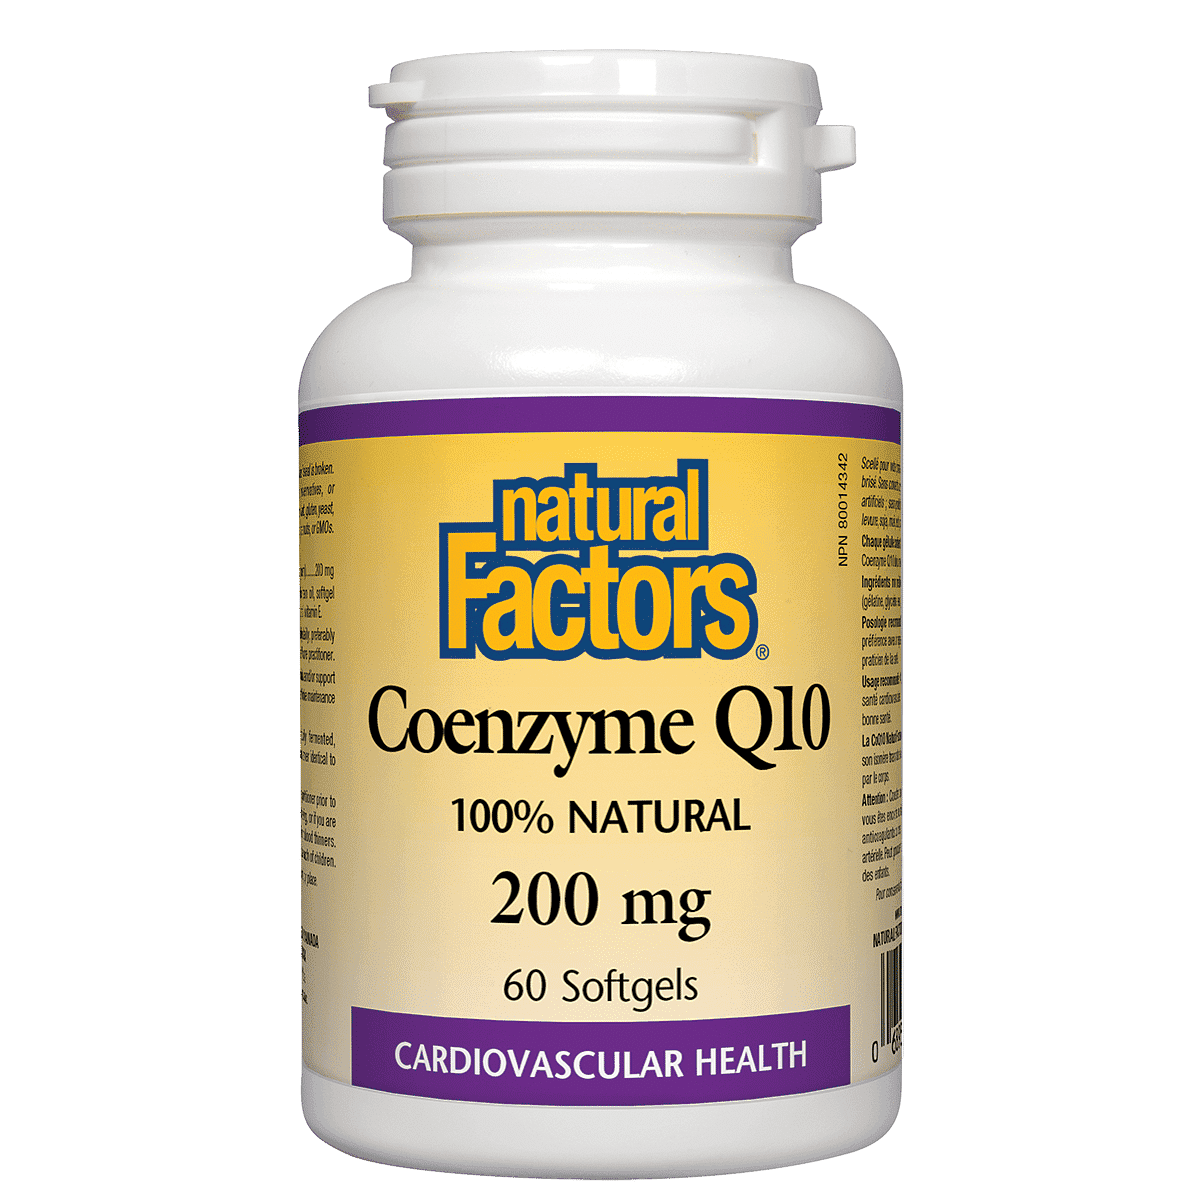 Natural Factors Coenzyme Q10 200 mg 60 Softgels